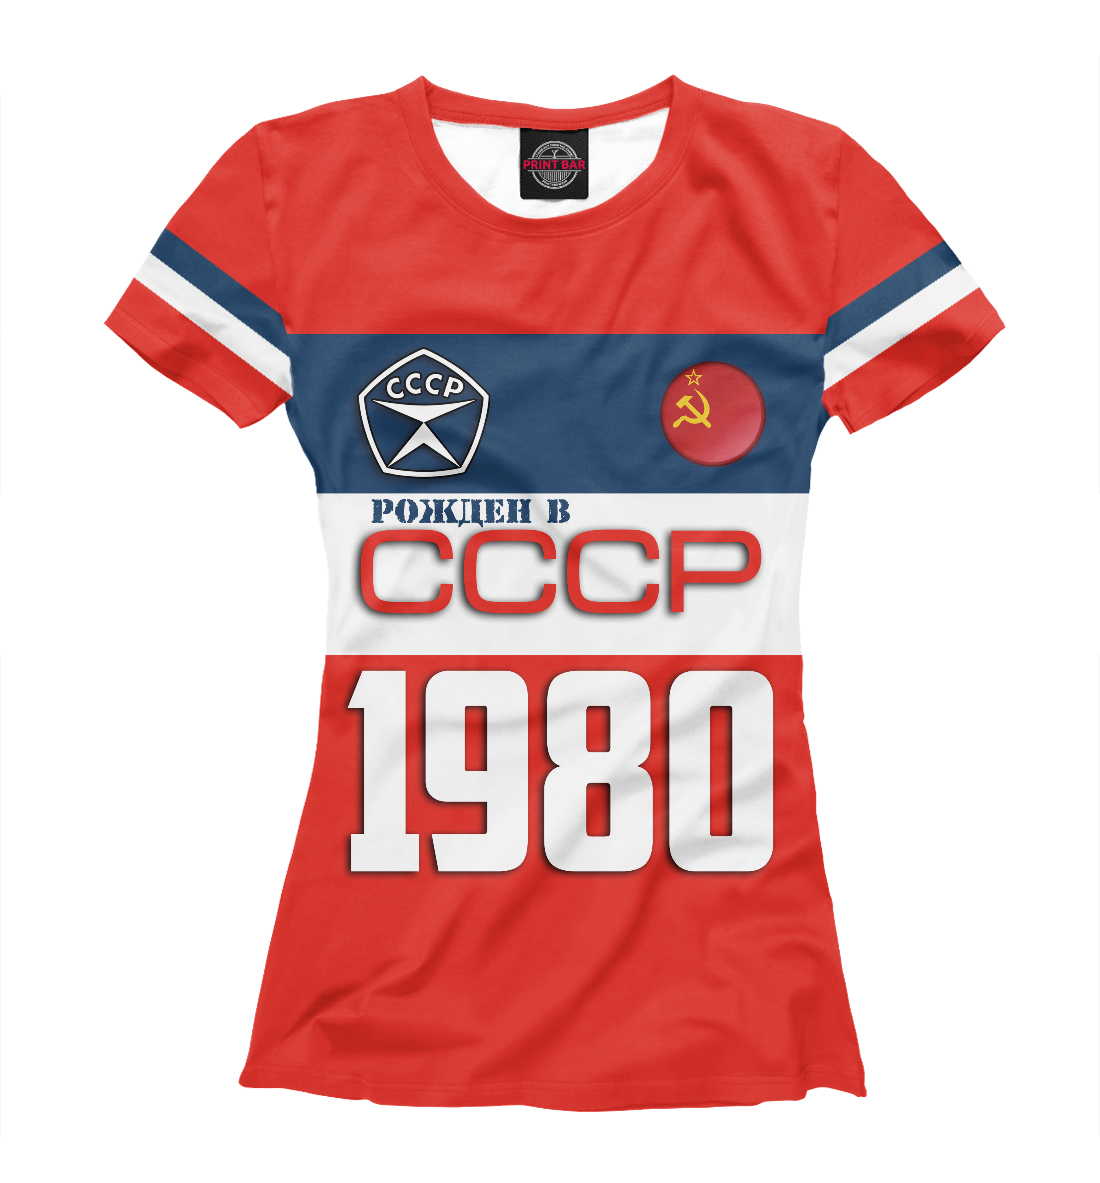 Футболка Рожден в СССР 1980 год для женщин, артикул: SSS-803366-fut-1mp